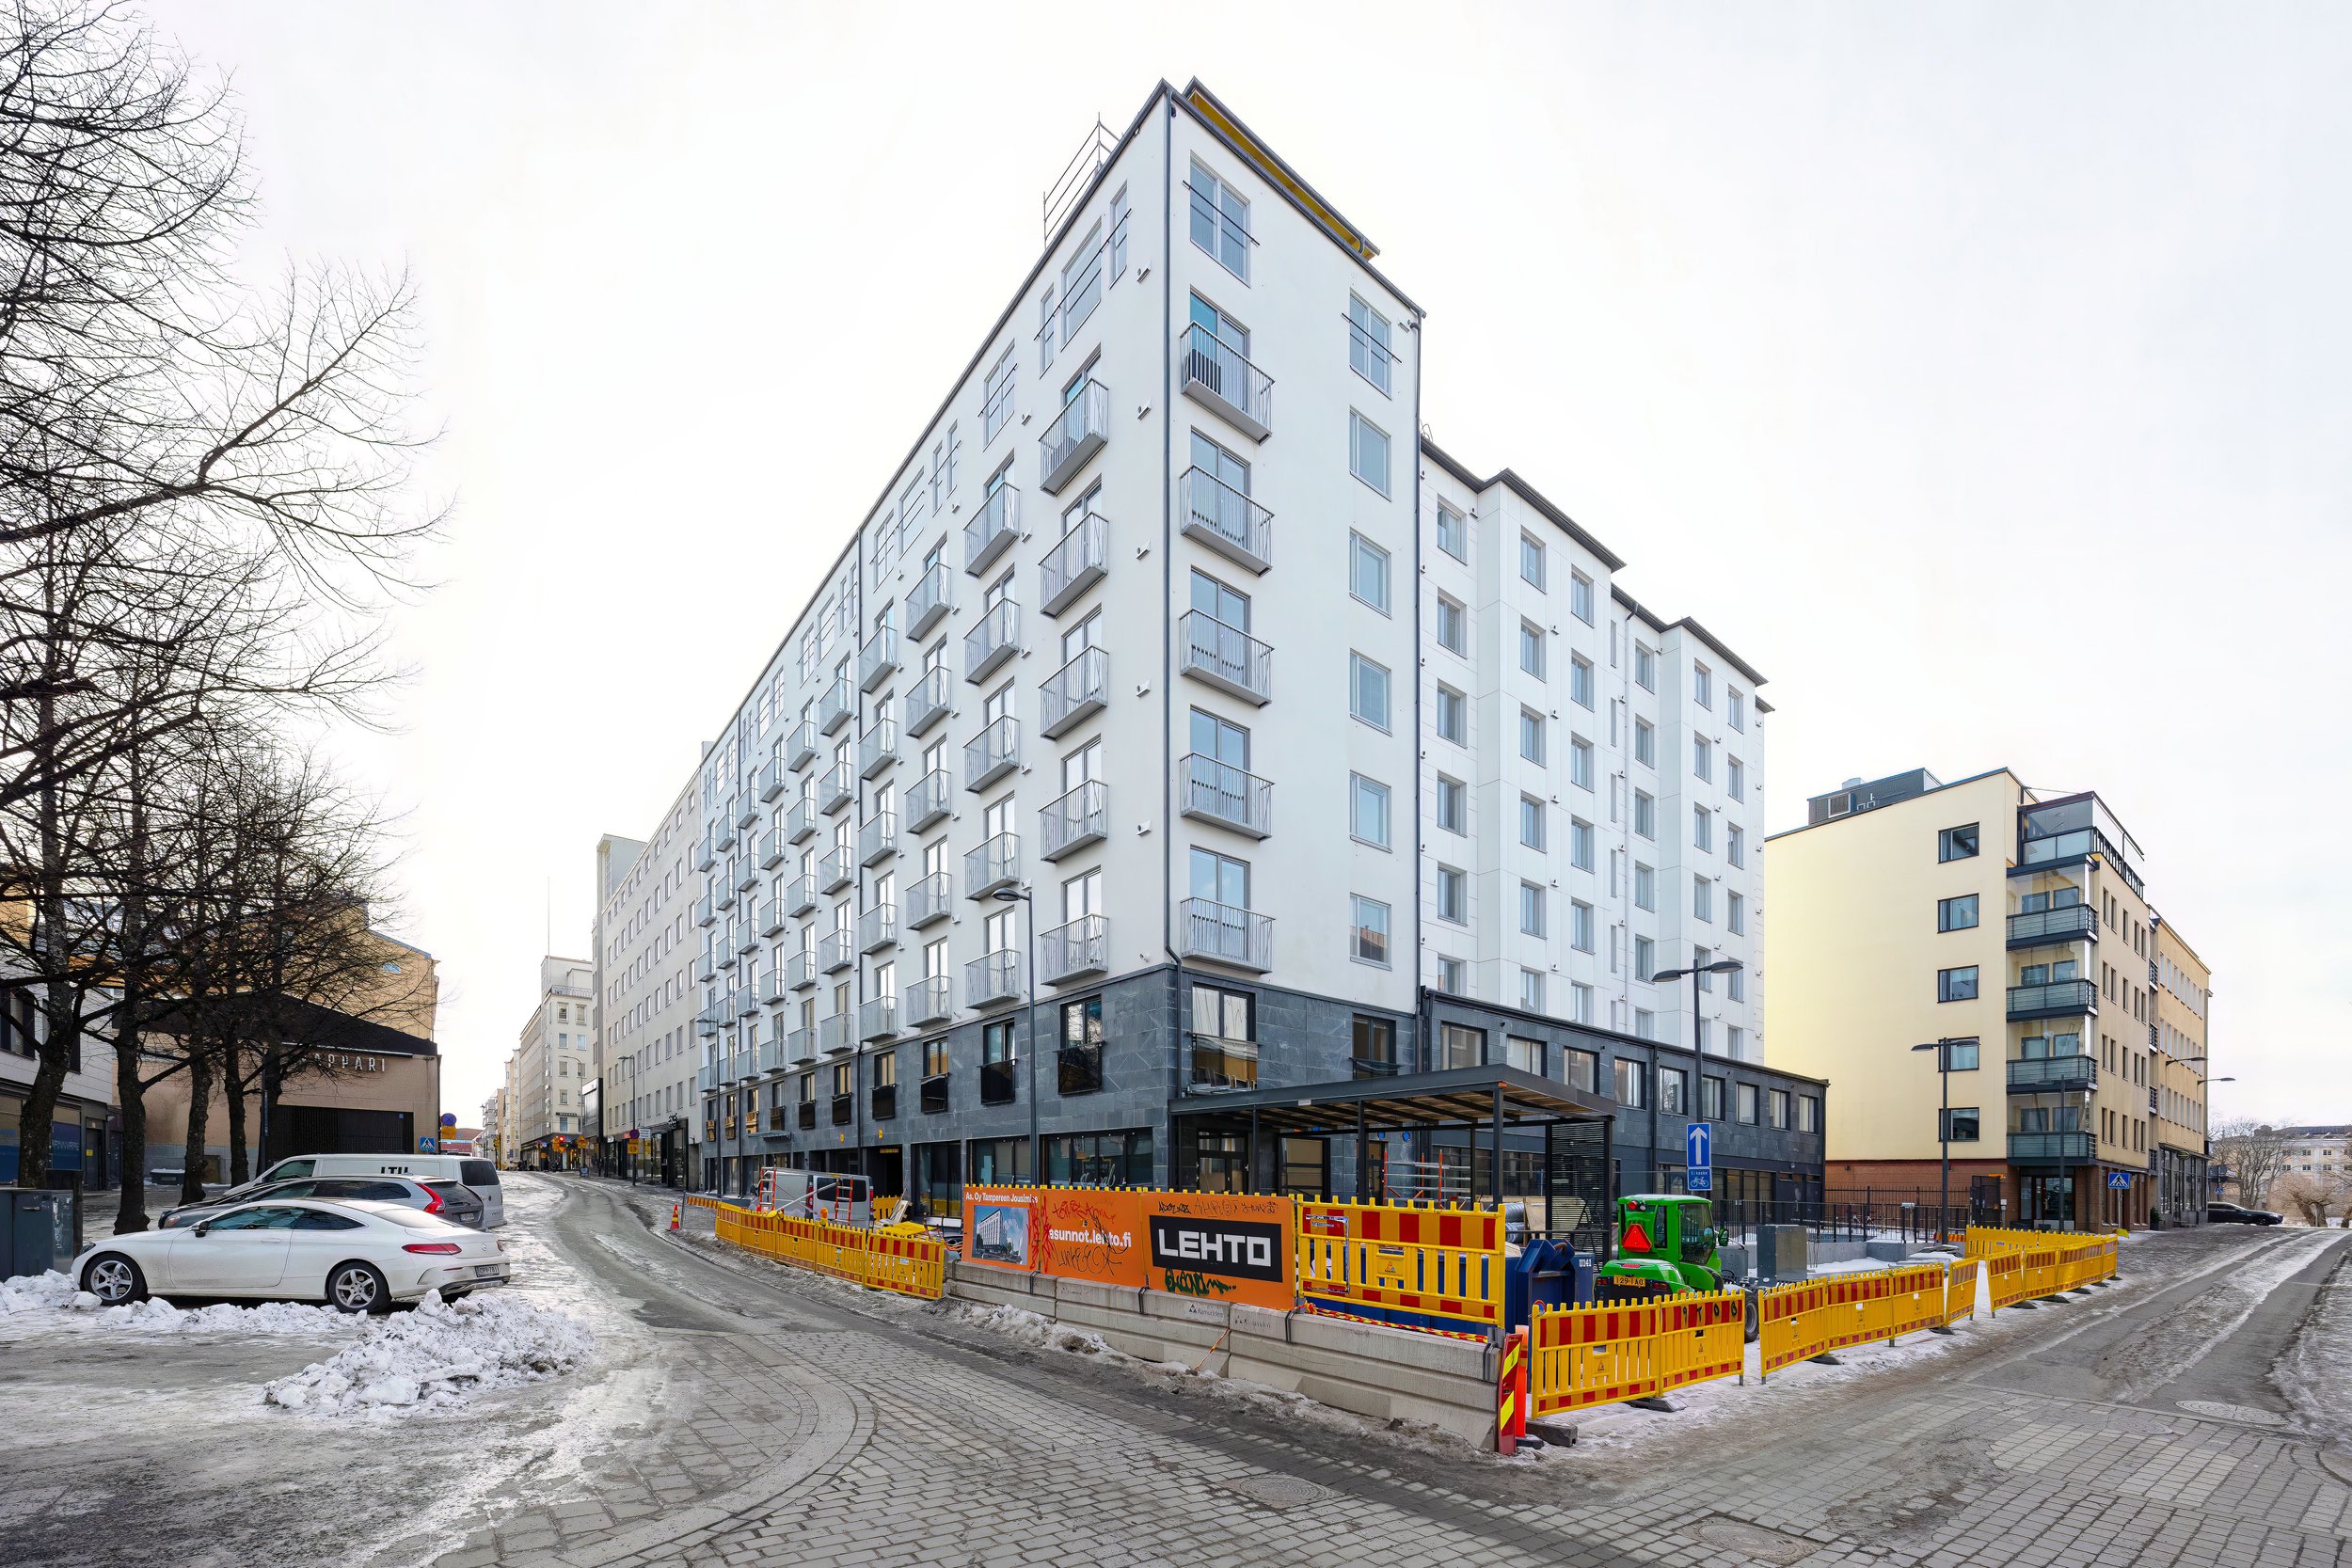 Asuntokuvaus rakennusliikkeelle Roope Jakonen Rojak Oy Tampere22.jpg